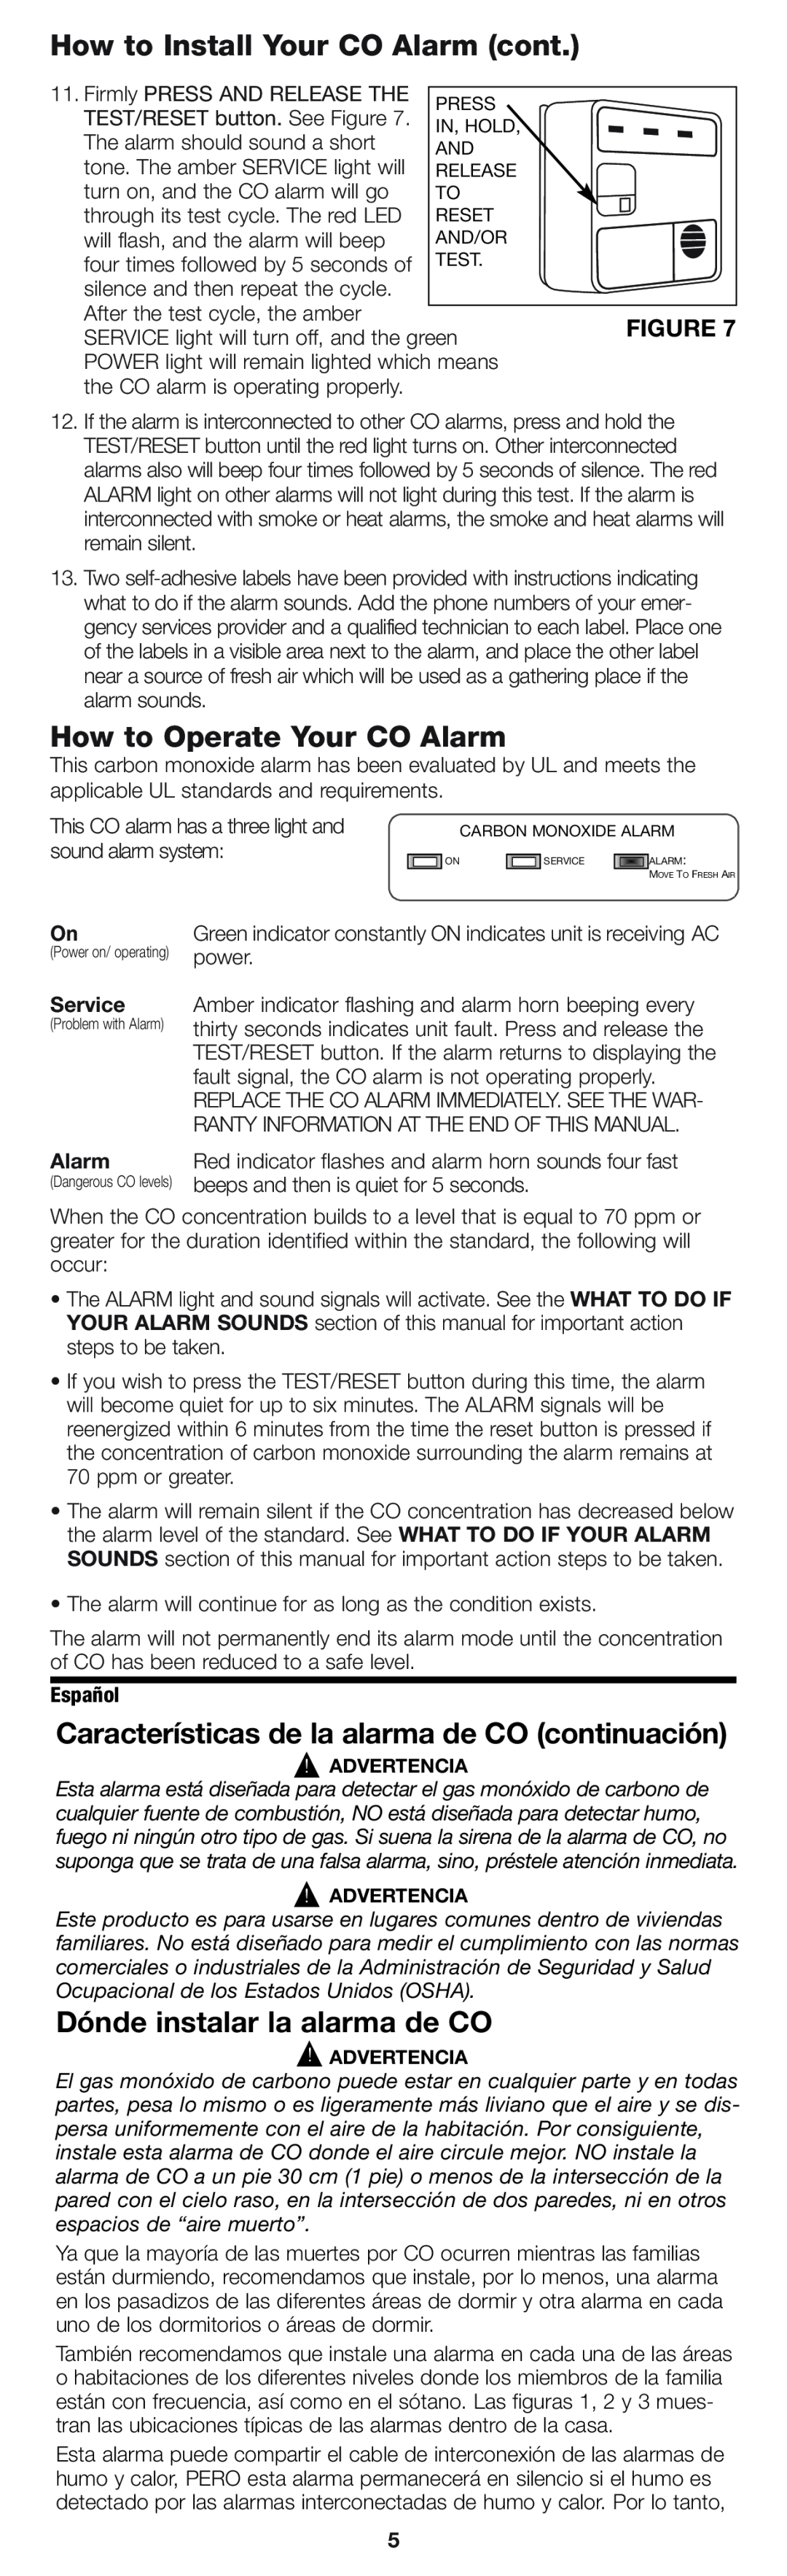 Firex pmn How to Install Your CO Alarm cont, How to Operate Your CO Alarm, Características de la alarma de CO continuación 